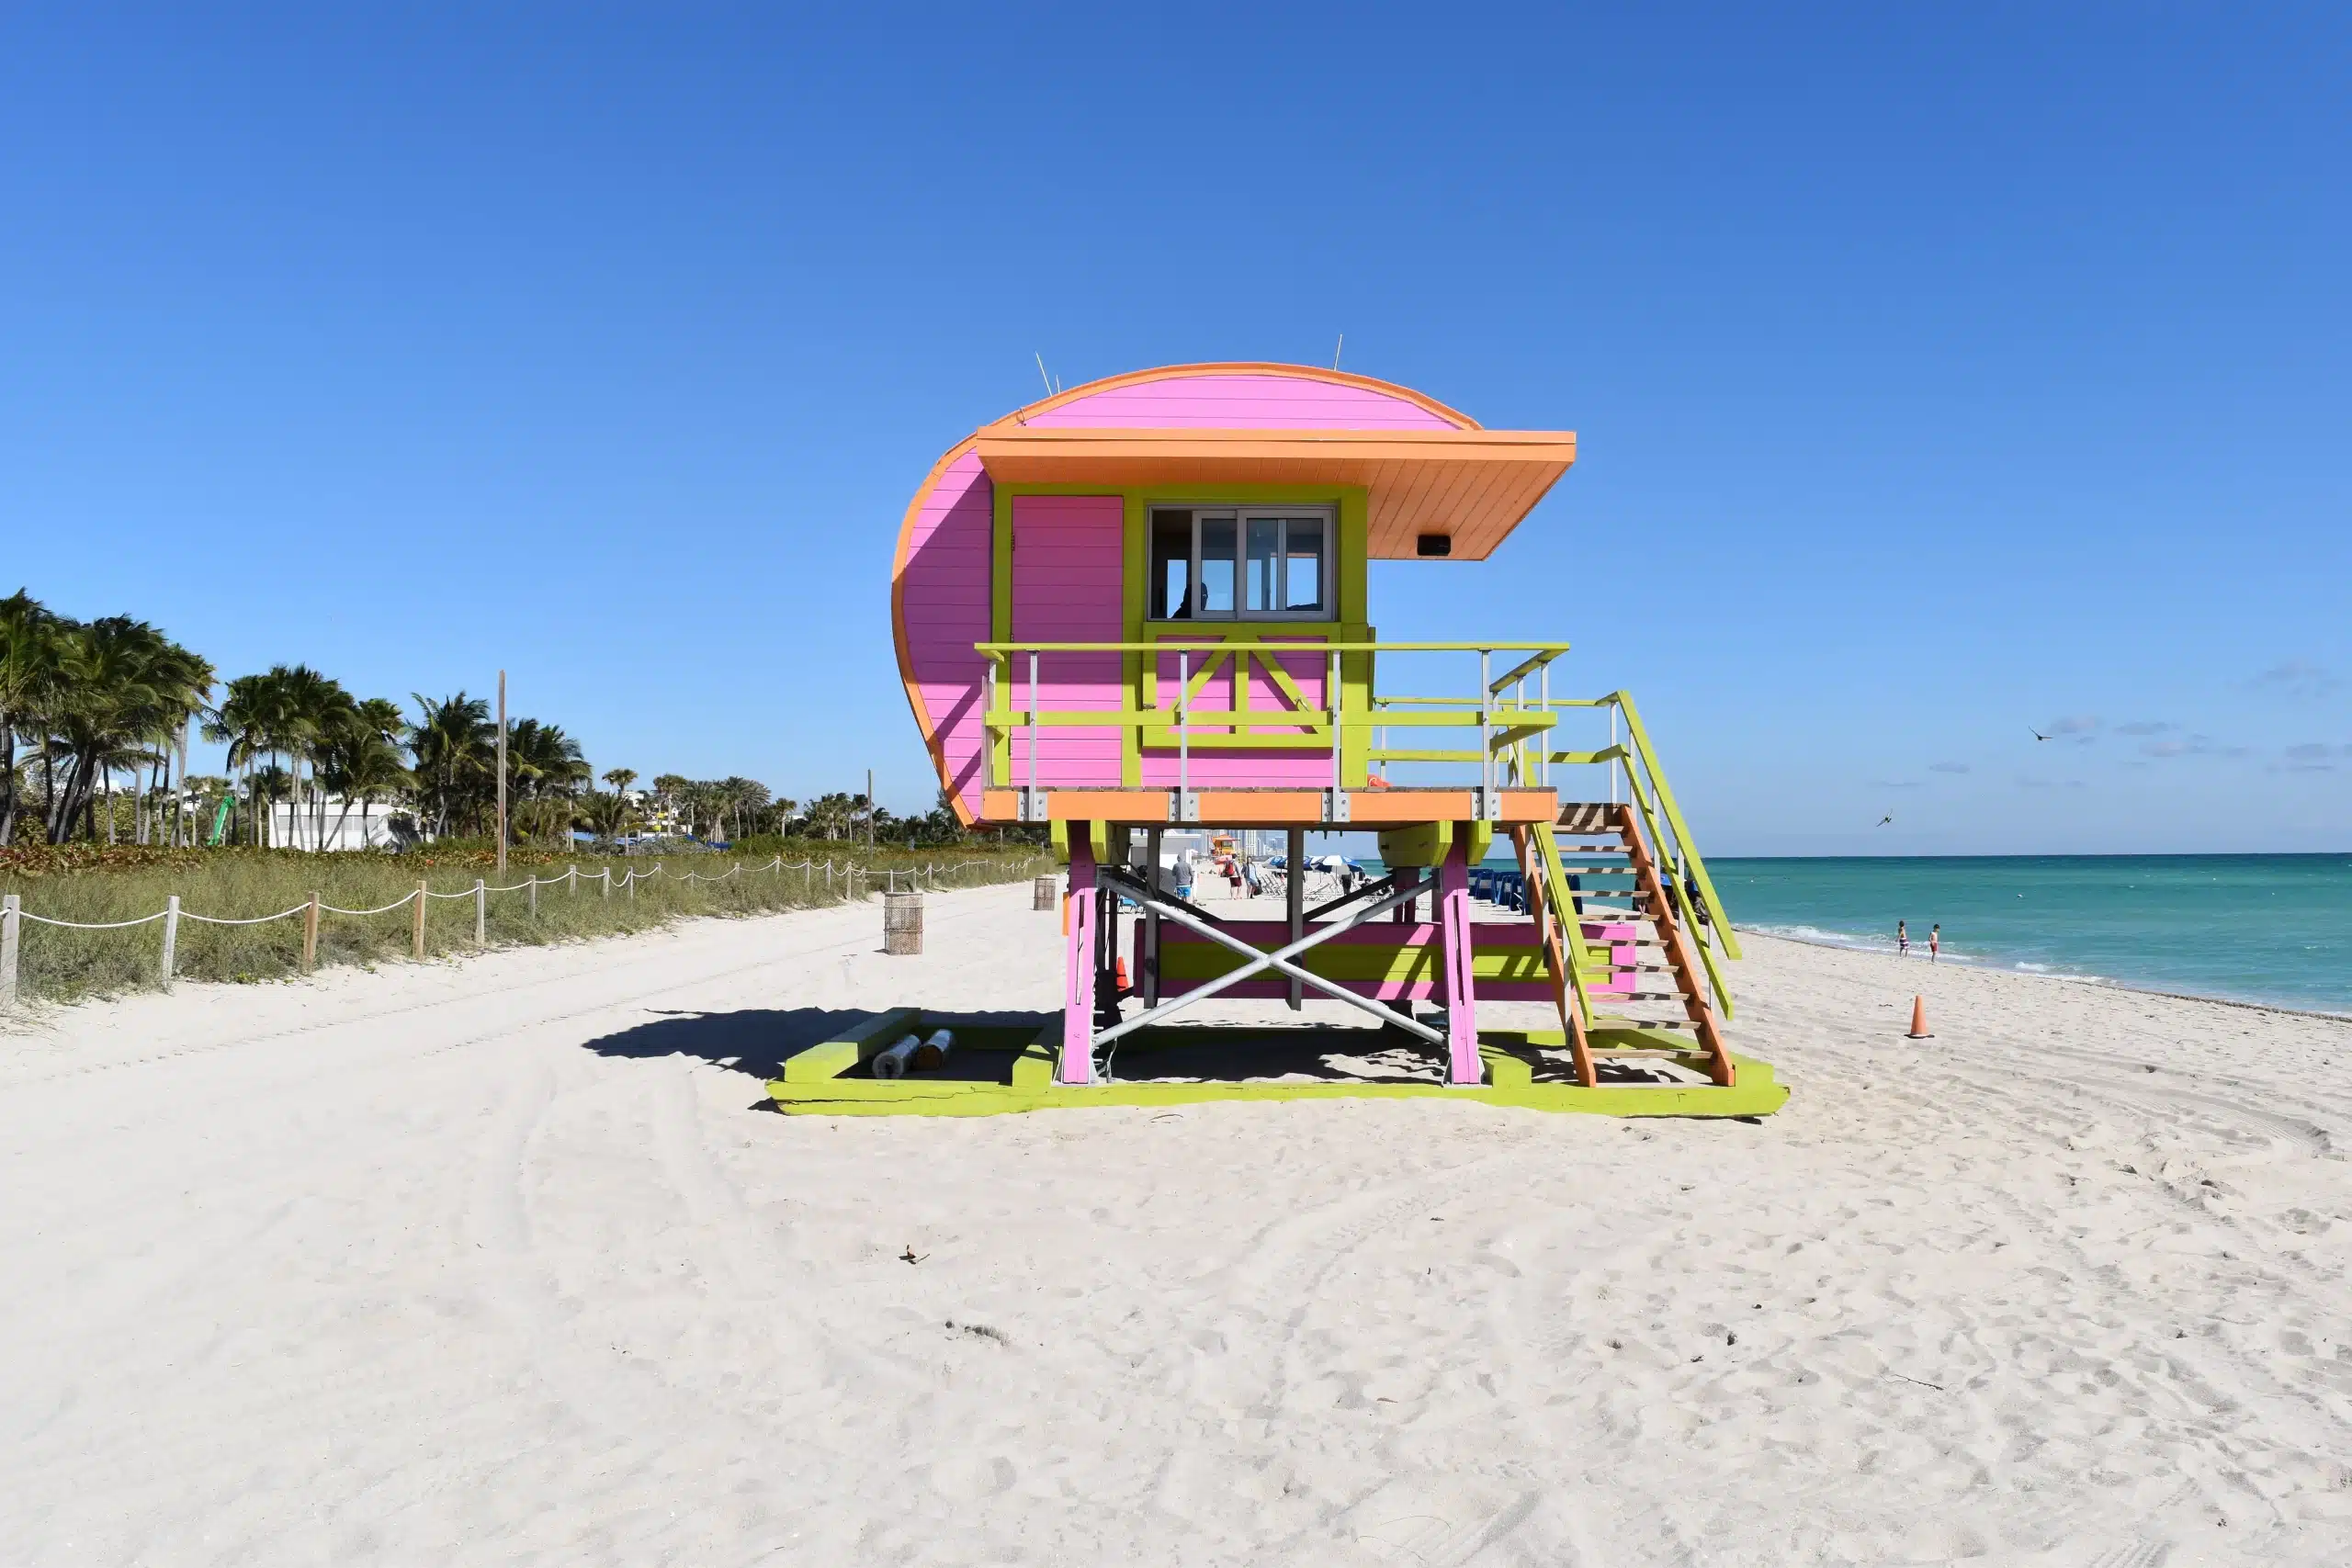 Ein hölzernes Wasserwachthäuschen mit geschwungenem Dach in Orange, Rosa und Gelb. Miami Beach, Lifeguard Tower, William Lane, Foto: Archiv Architekten